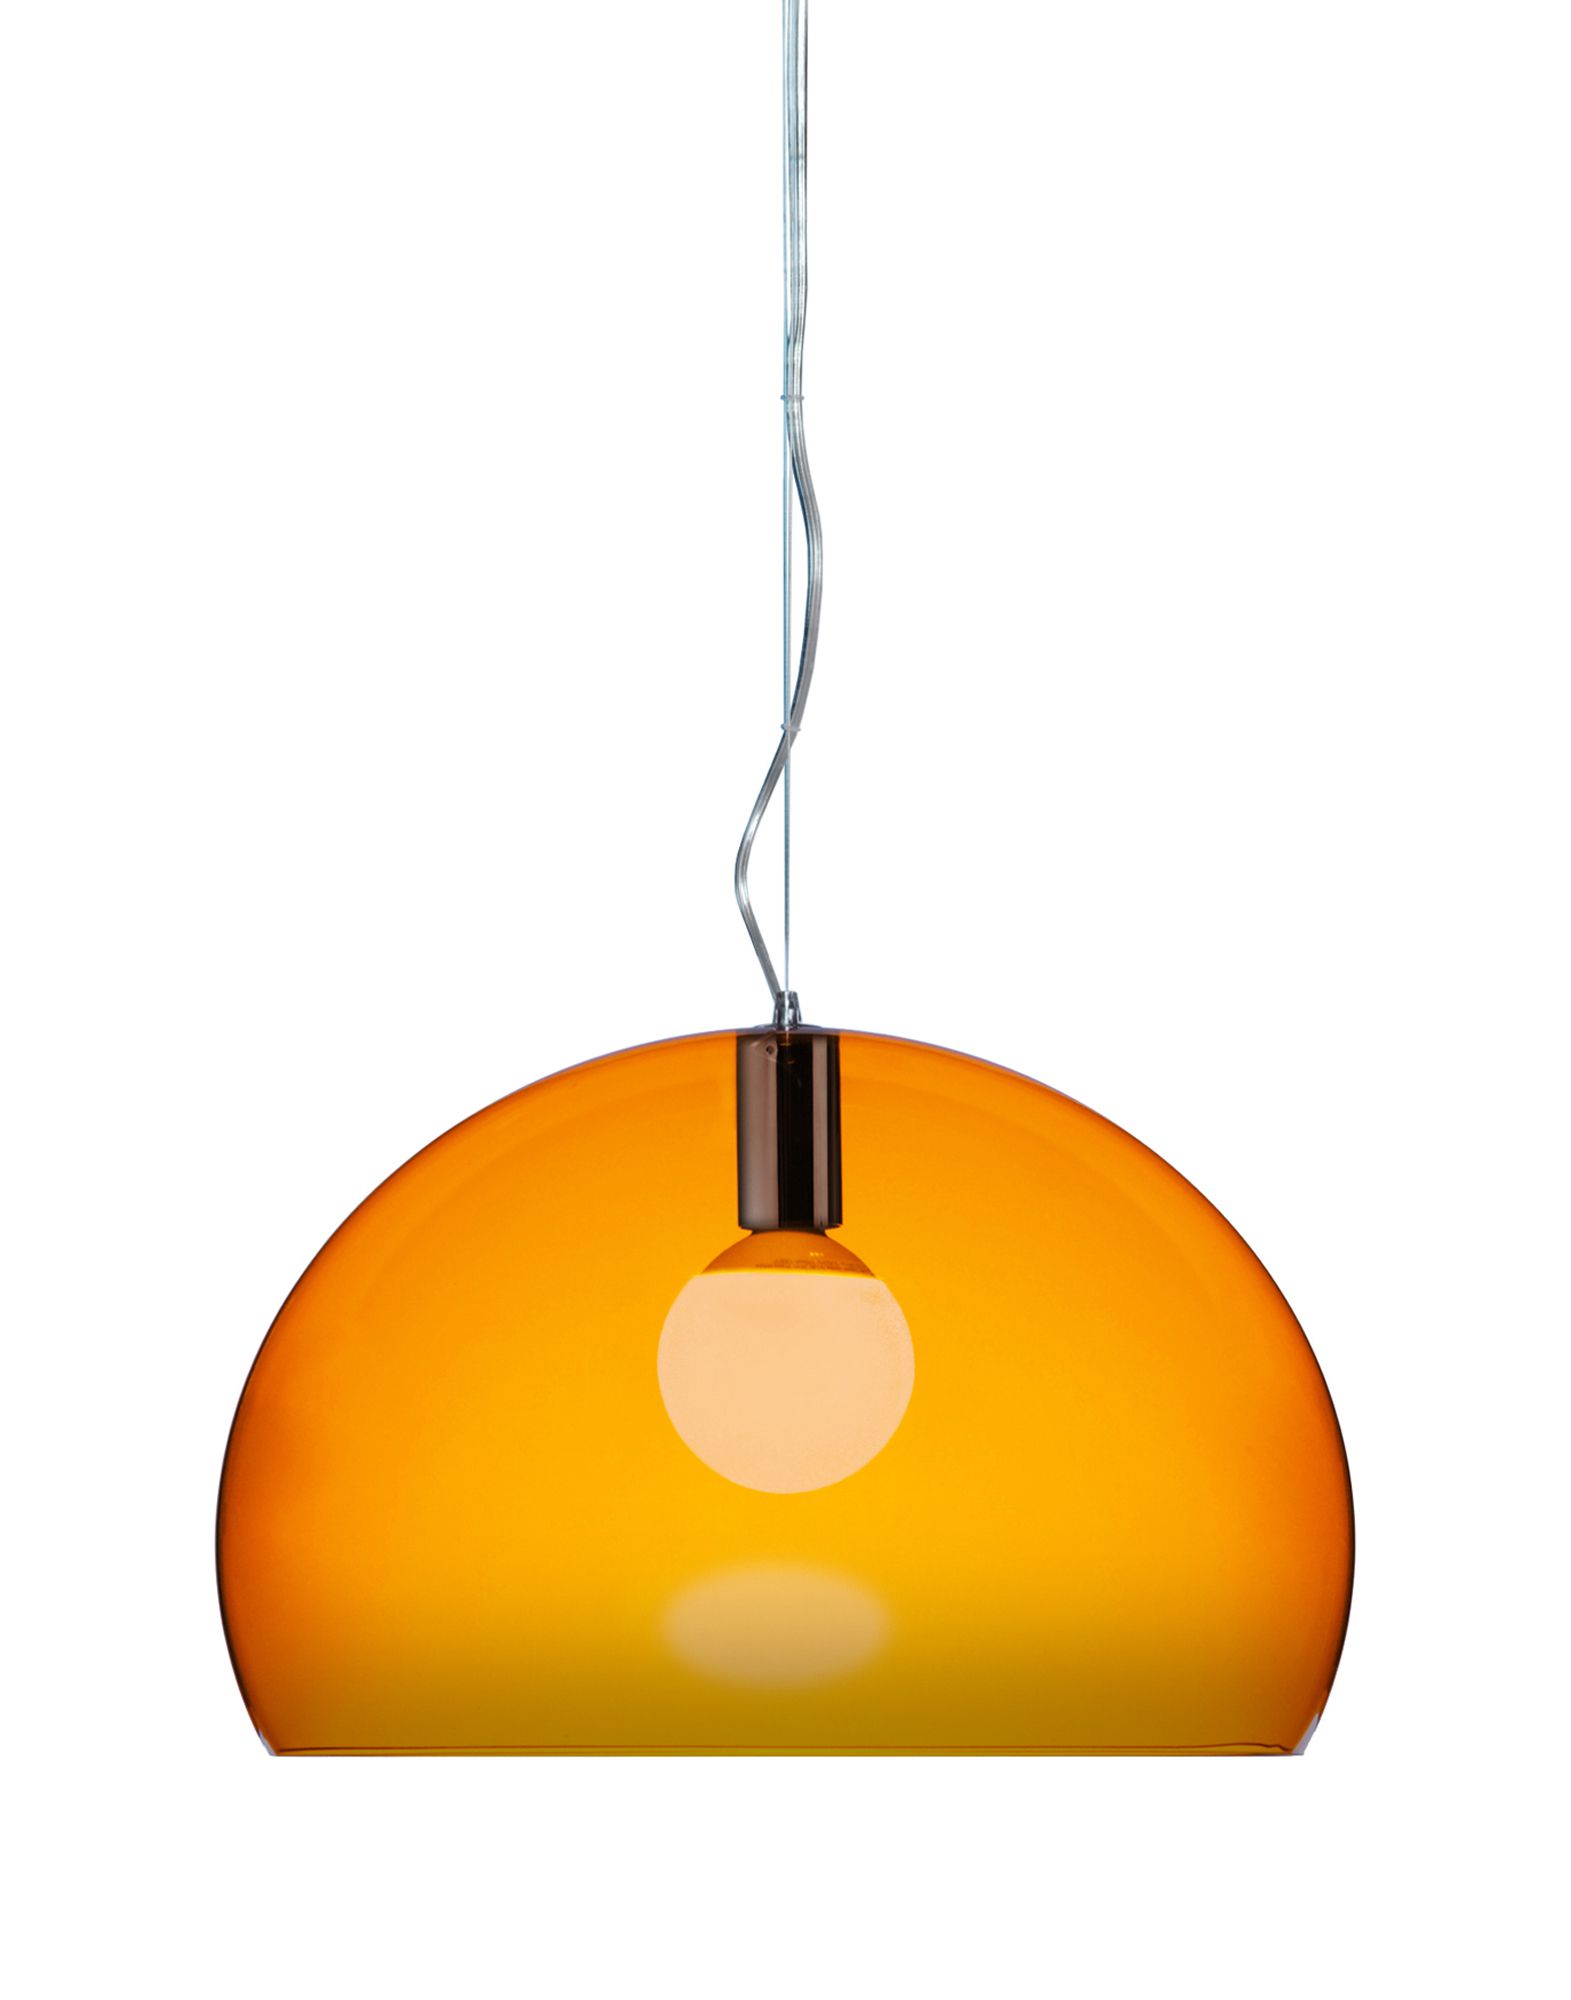 Suspensie Kartell FL/Y design Ferruccio Laviani E27 max 15W LED h33cm portocaliu transparent Kartell imagine reduss.ro 2022